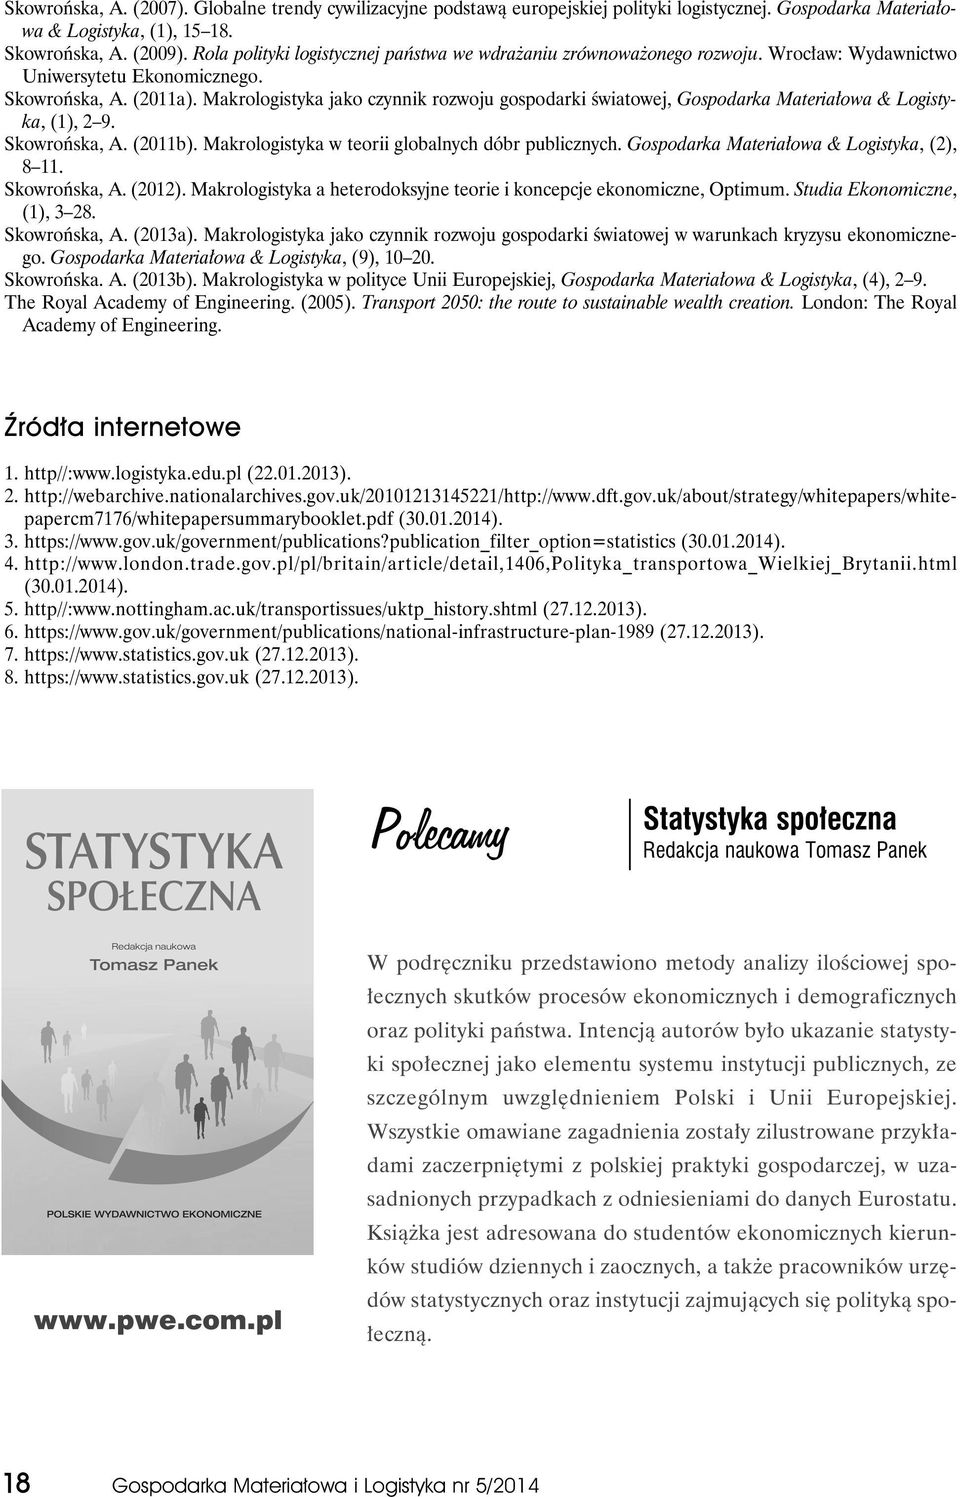 Makrologistyka jako czynnik rozwoju gospodarki światowej, Gospodarka Materiałowa & Logistyka, (1), 2 9. Skowrońska, A. (2011b). Makrologistyka w teorii globalnych dóbr publicznych.